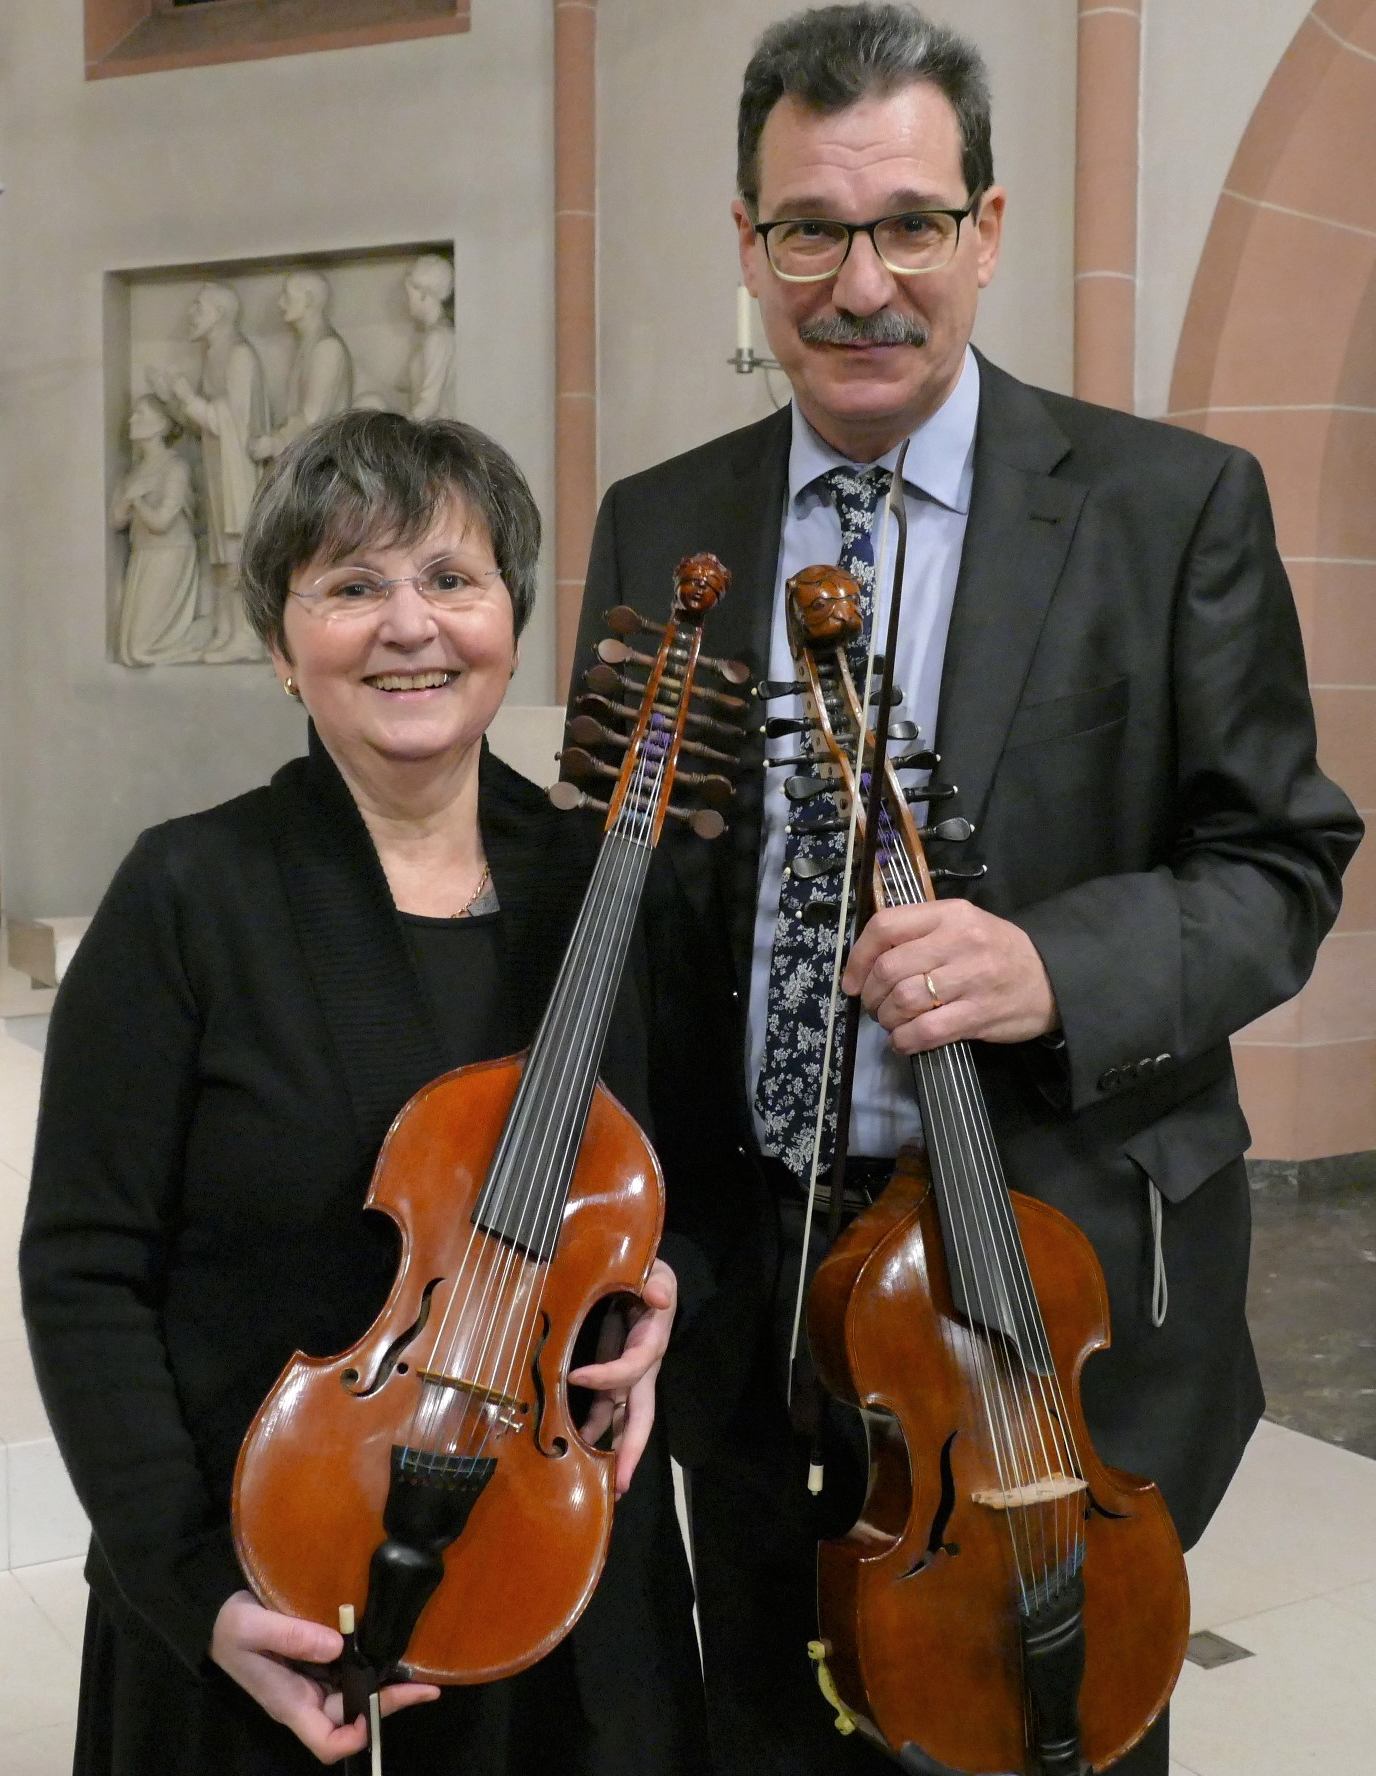 Simona und Gheorghe Balan freuen sich über die vielfältige Resonanz in Bad Nauheim (c) Hanna von Prosch 2020